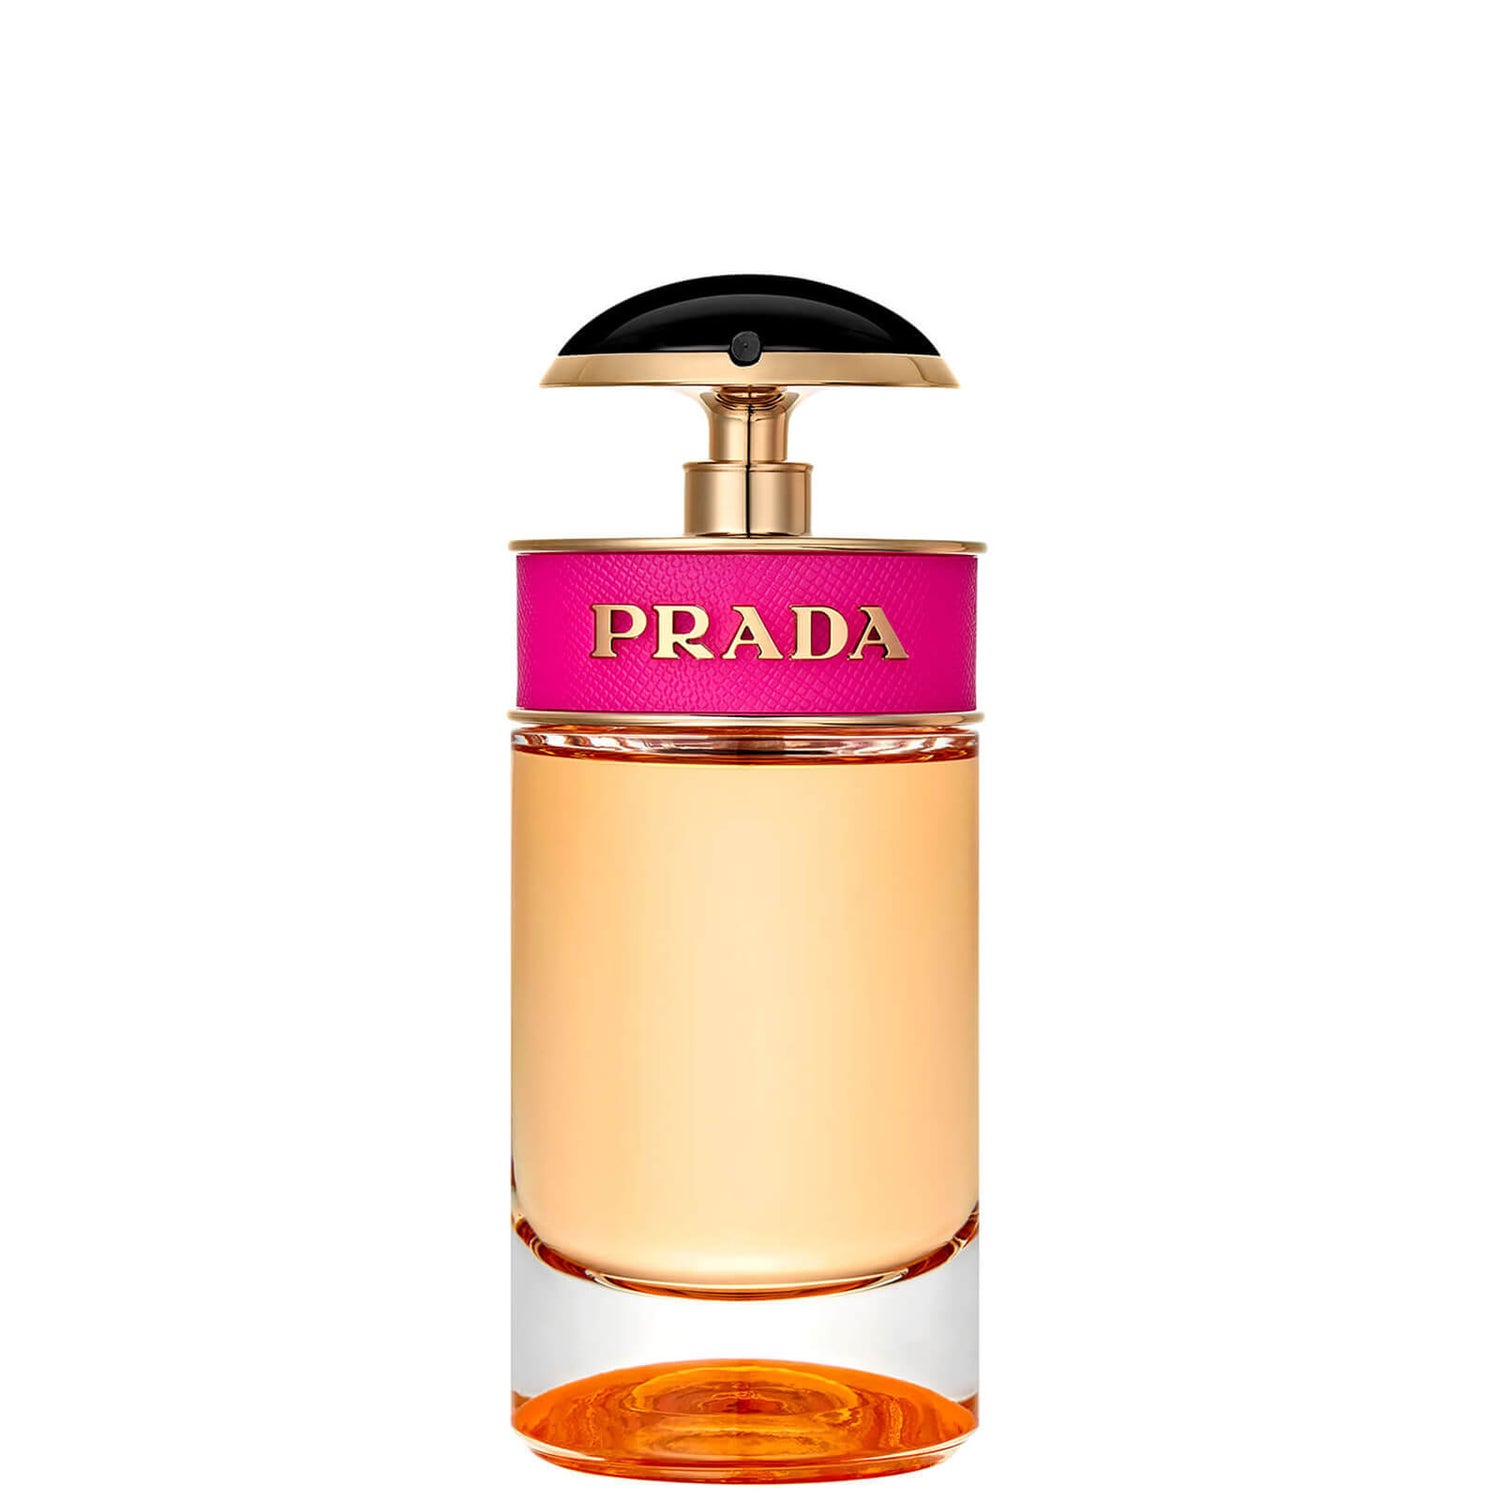 Prada Candy Eau de Parfum - 50ml Prada Candy parfémovaná voda - 50 ml